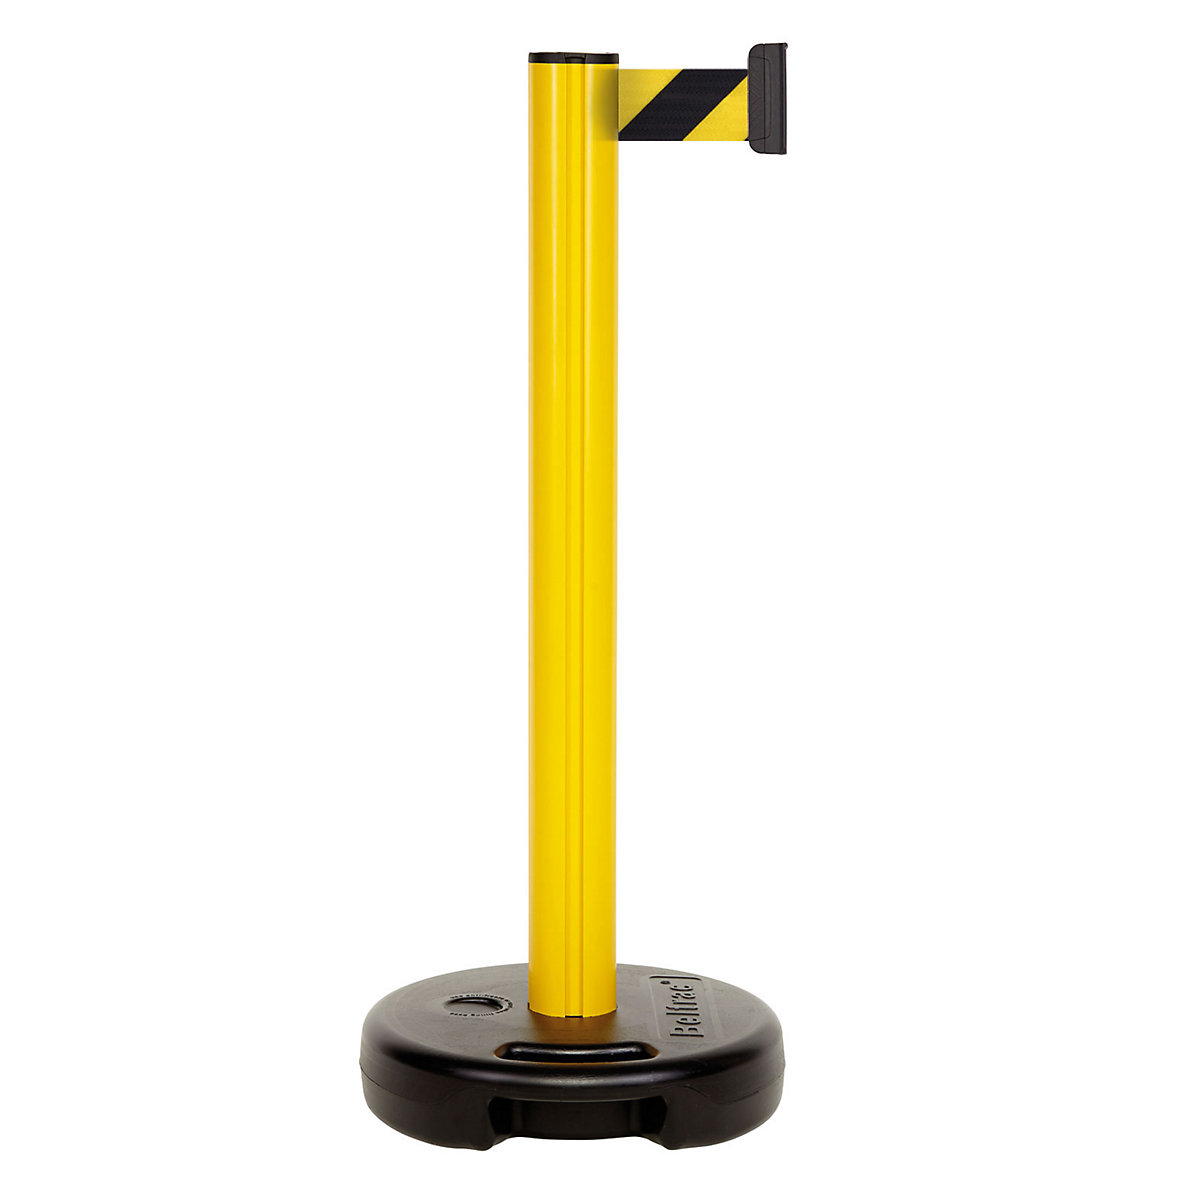 Hevederes oszlop műanyagból, max. szalagkihúzás 3700 mm, oszlop sárga, szalag sárga / fekete